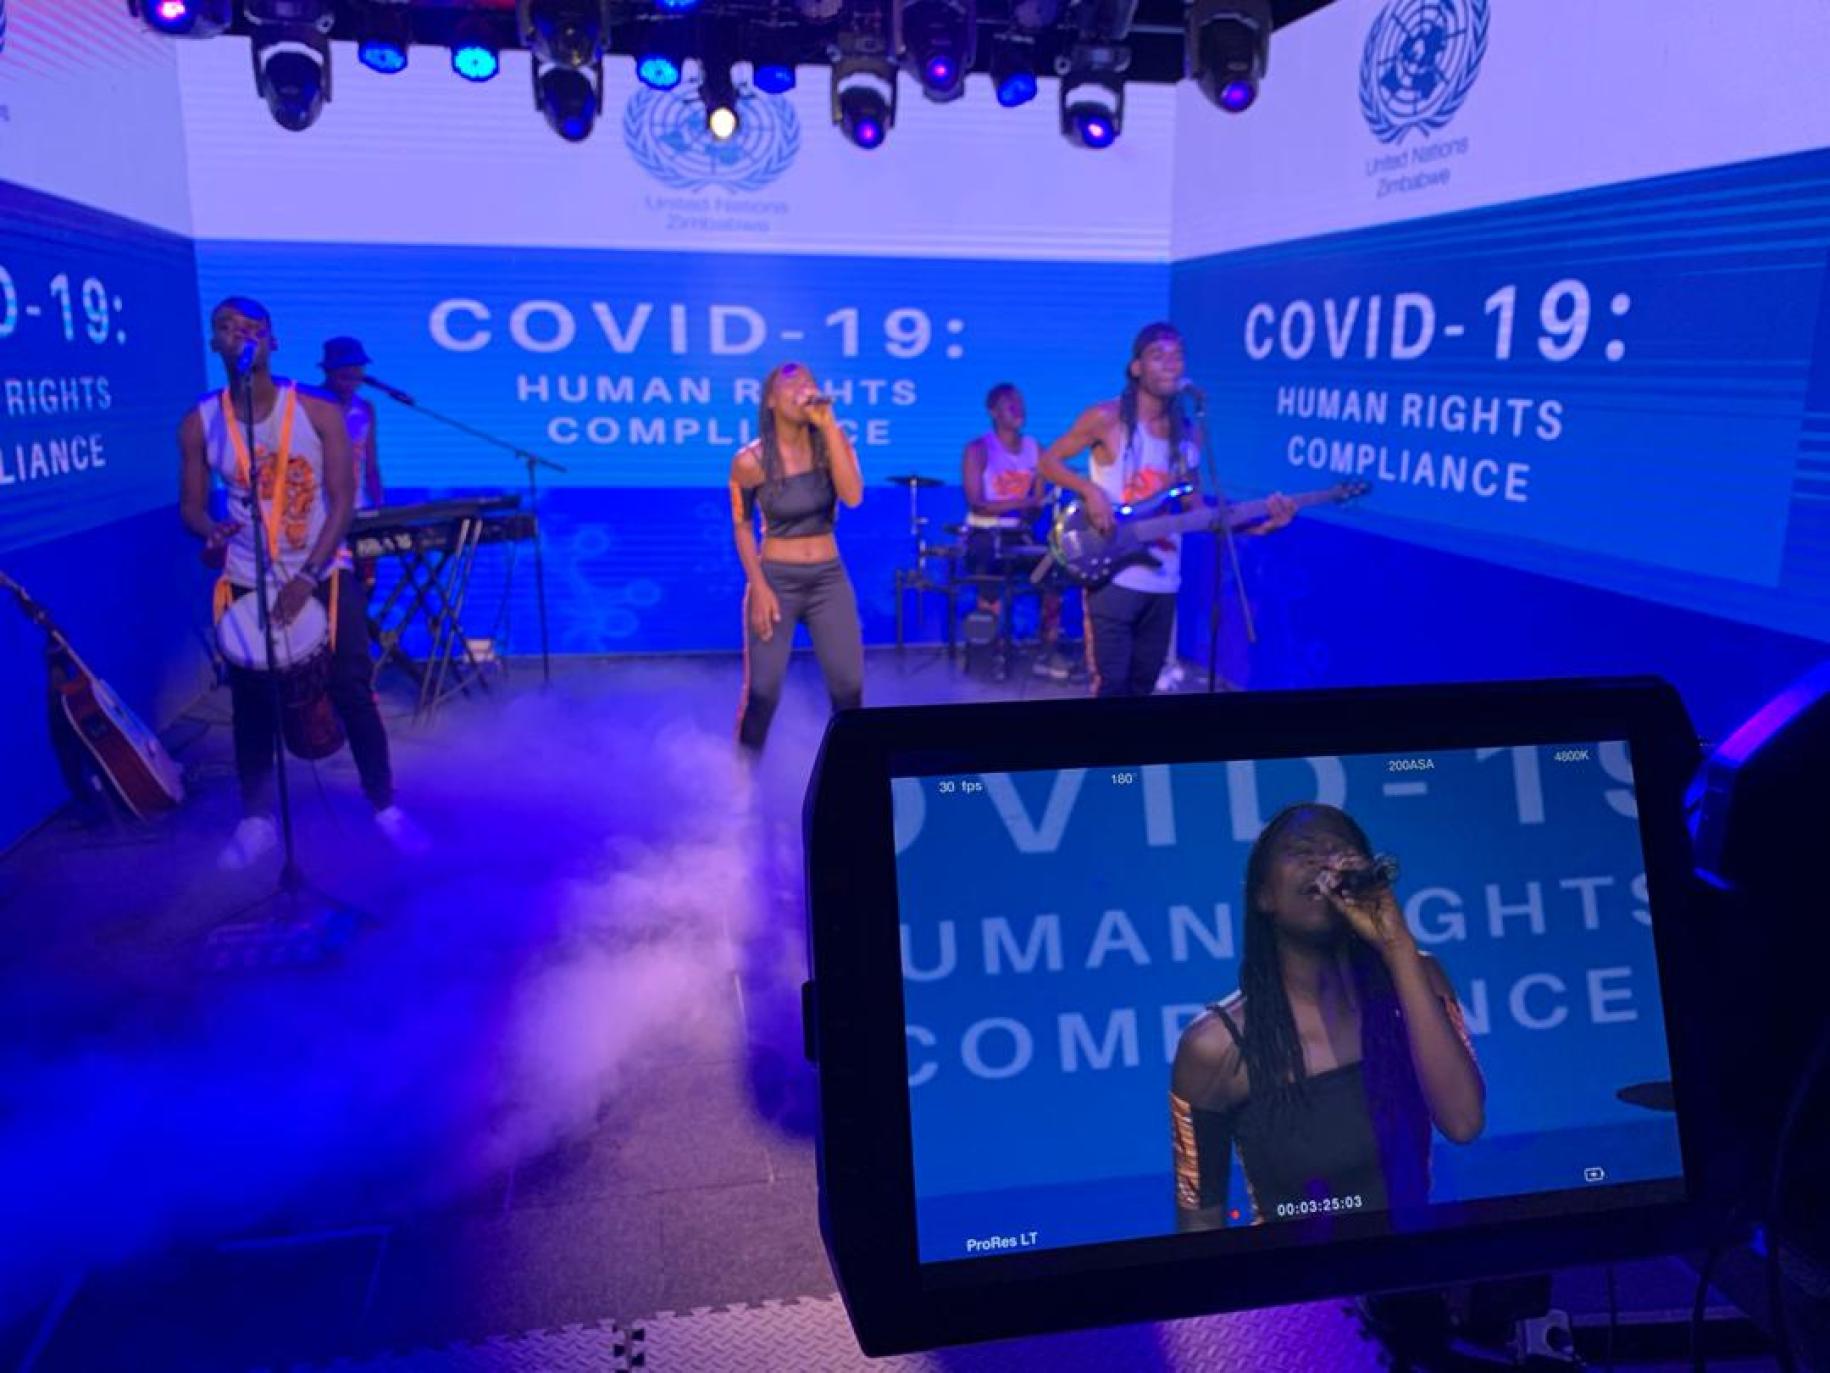 Caroleen Masawi y su banda actúan rodeados de pantallas verdes con un mensaje de la COVID-19.